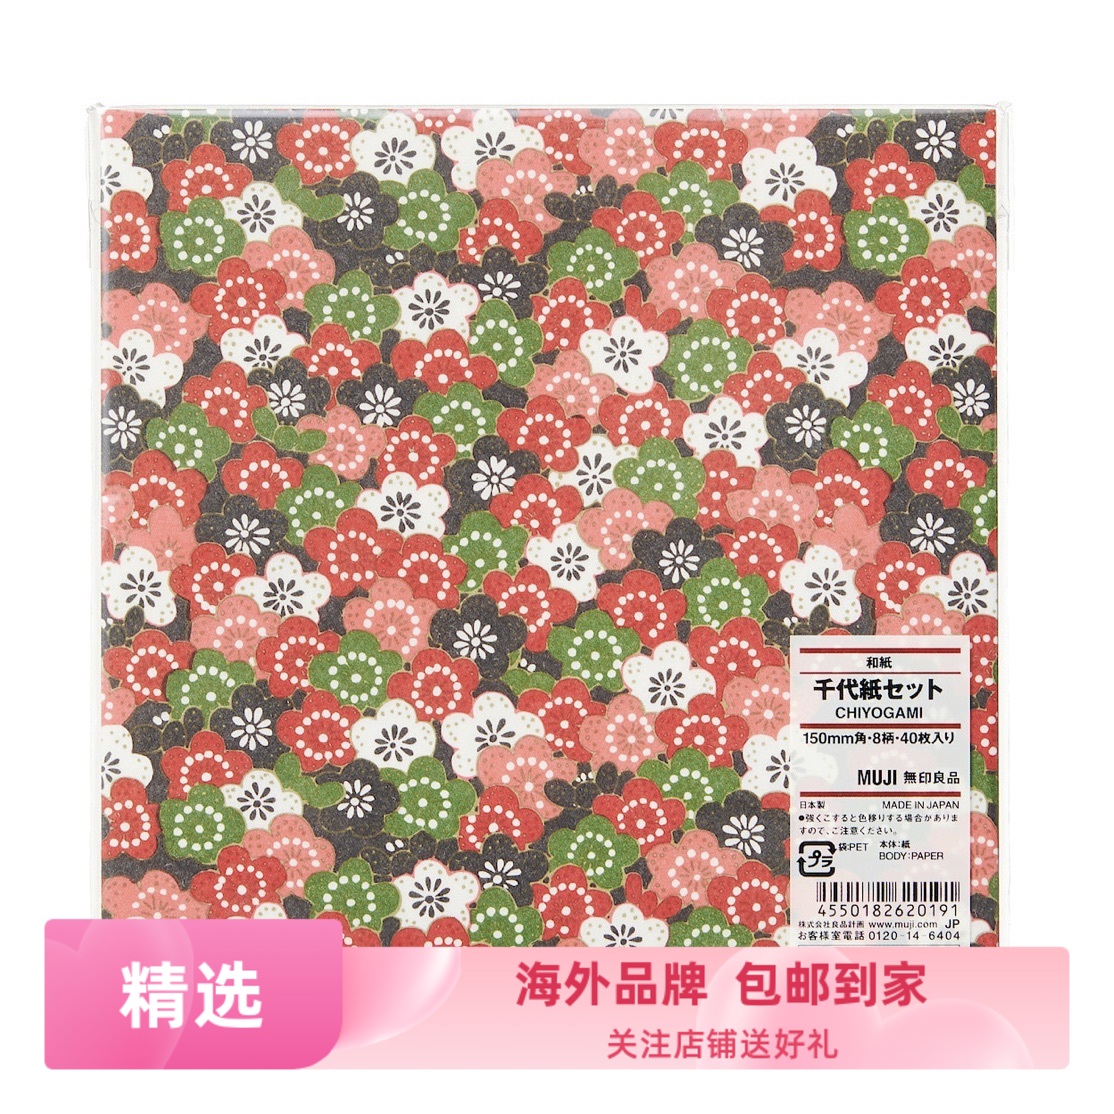 日本无印良品MUJI儿童彩色方形手工折纸彩纸27色80枚入附折纸方法